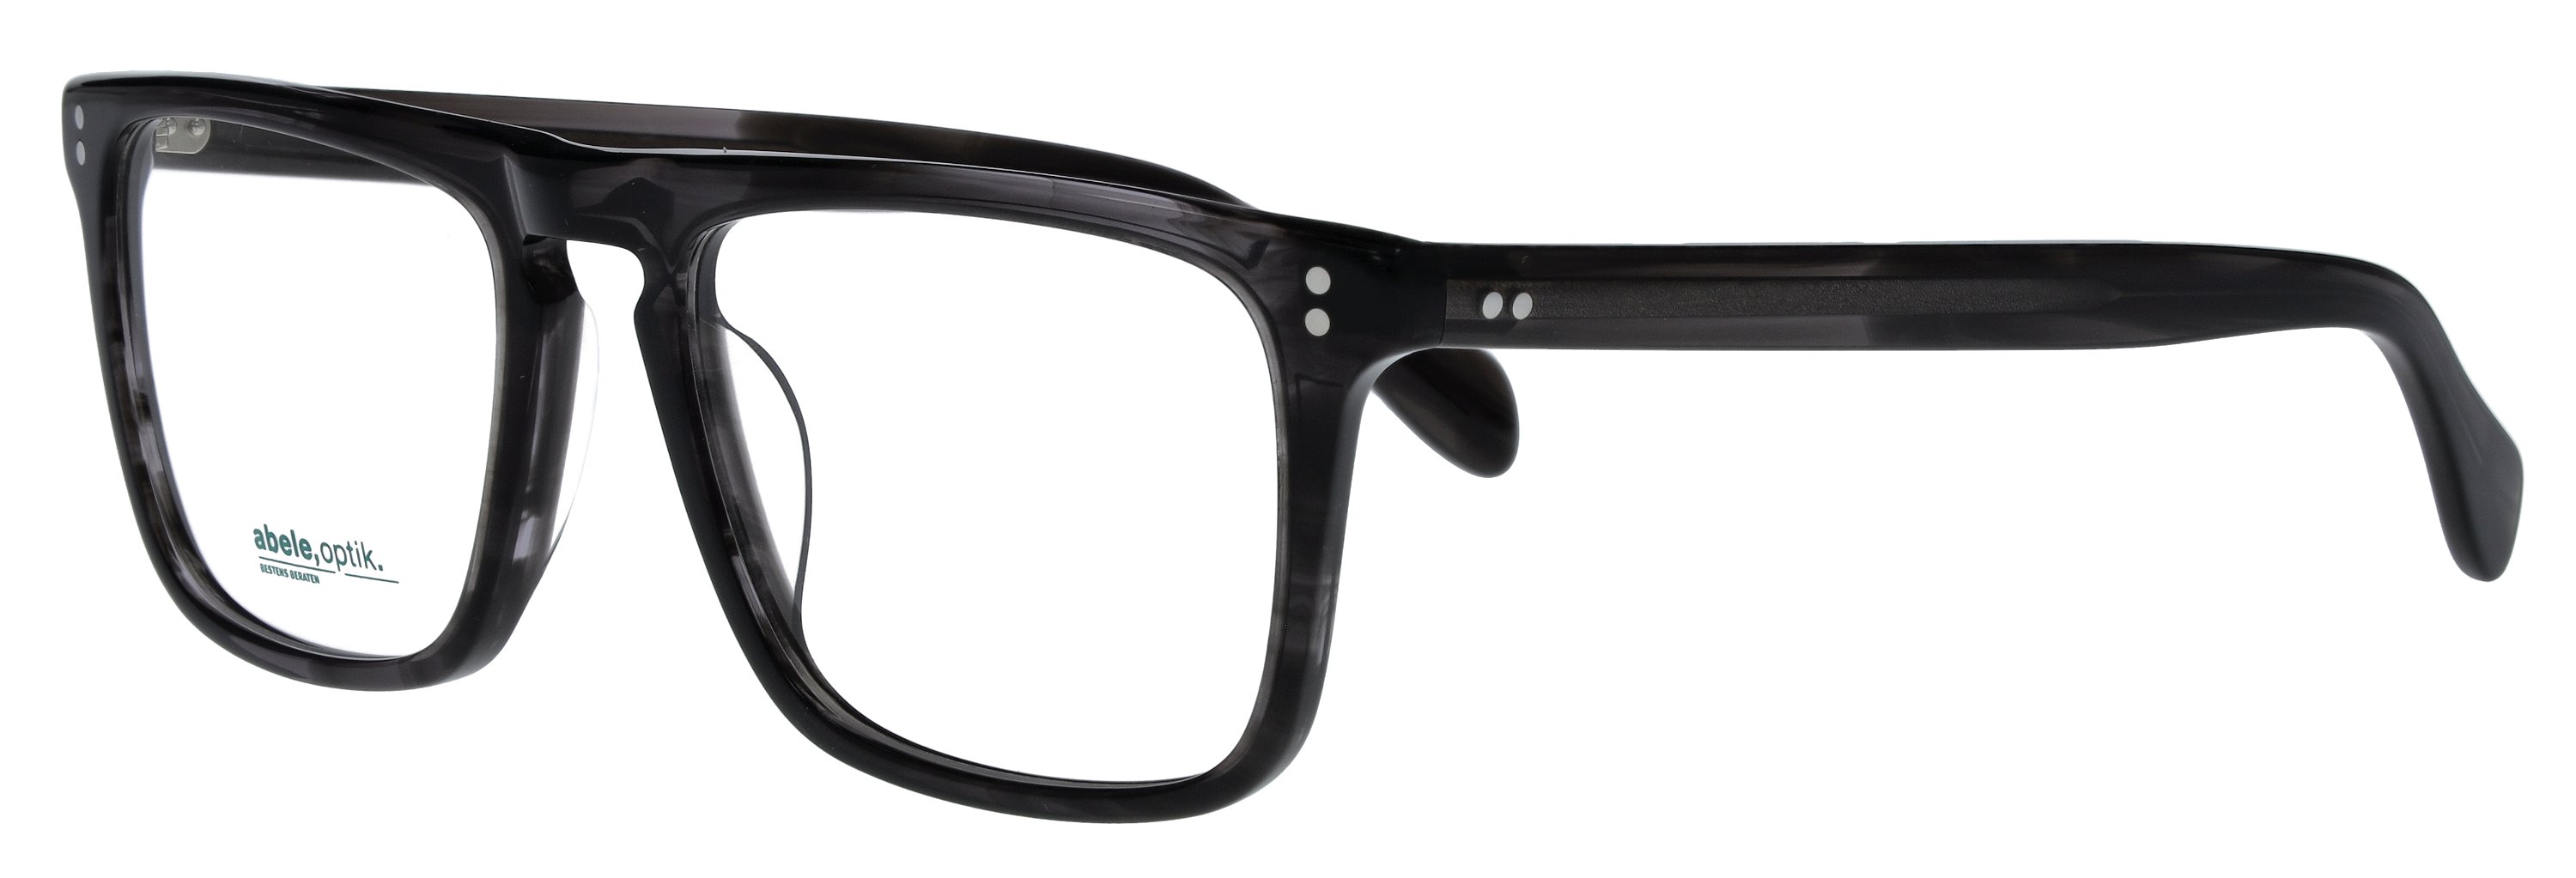 Das Bild zeigt die Korrektionsbrille 148741 von der Marke Abele Optik in schwarz-grau transparent.